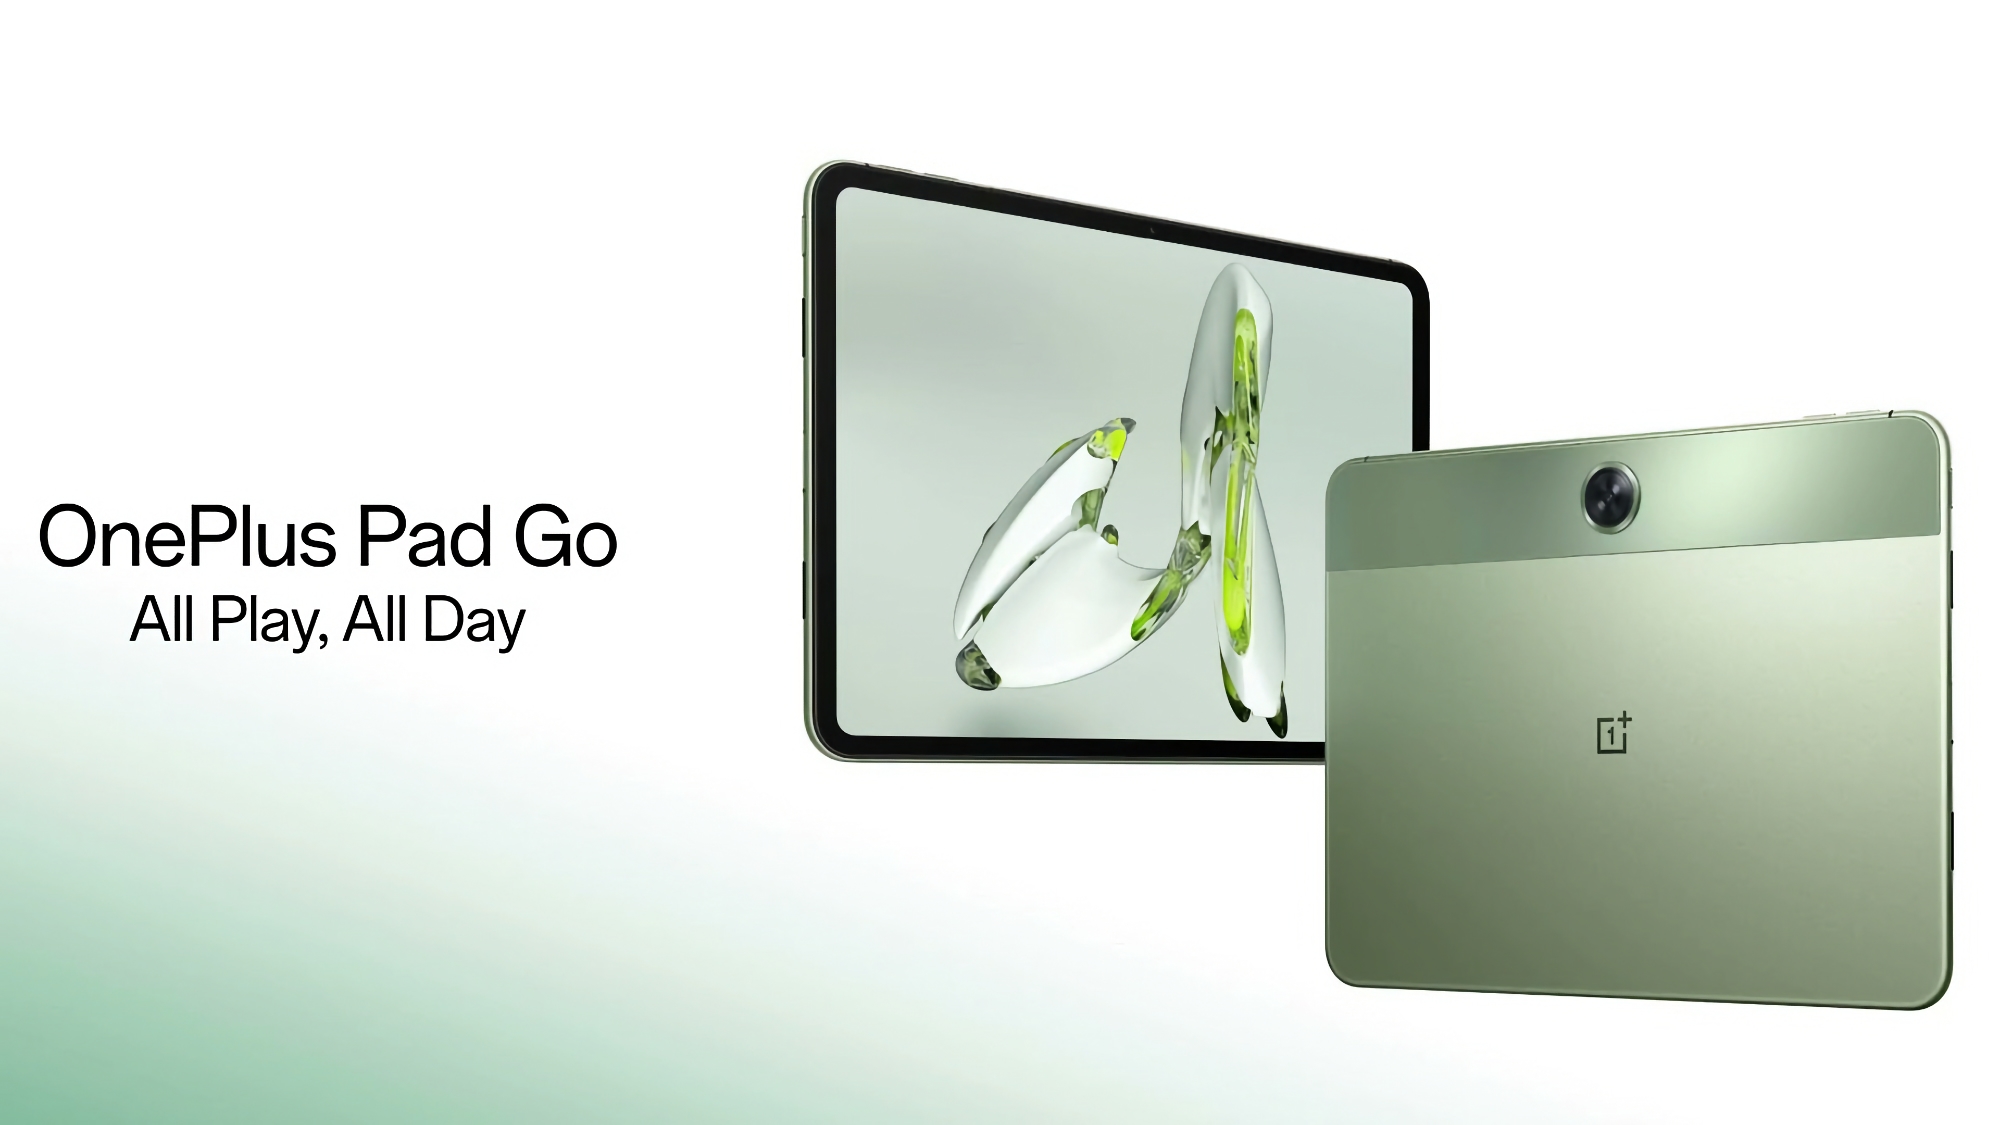 Le OnePlus Pad Go fait ses débuts en Europe : une tablette avec un écran 2K à 90Hz, une puce MediaTek Helio G99, la LTE et un prix de 299 euros.